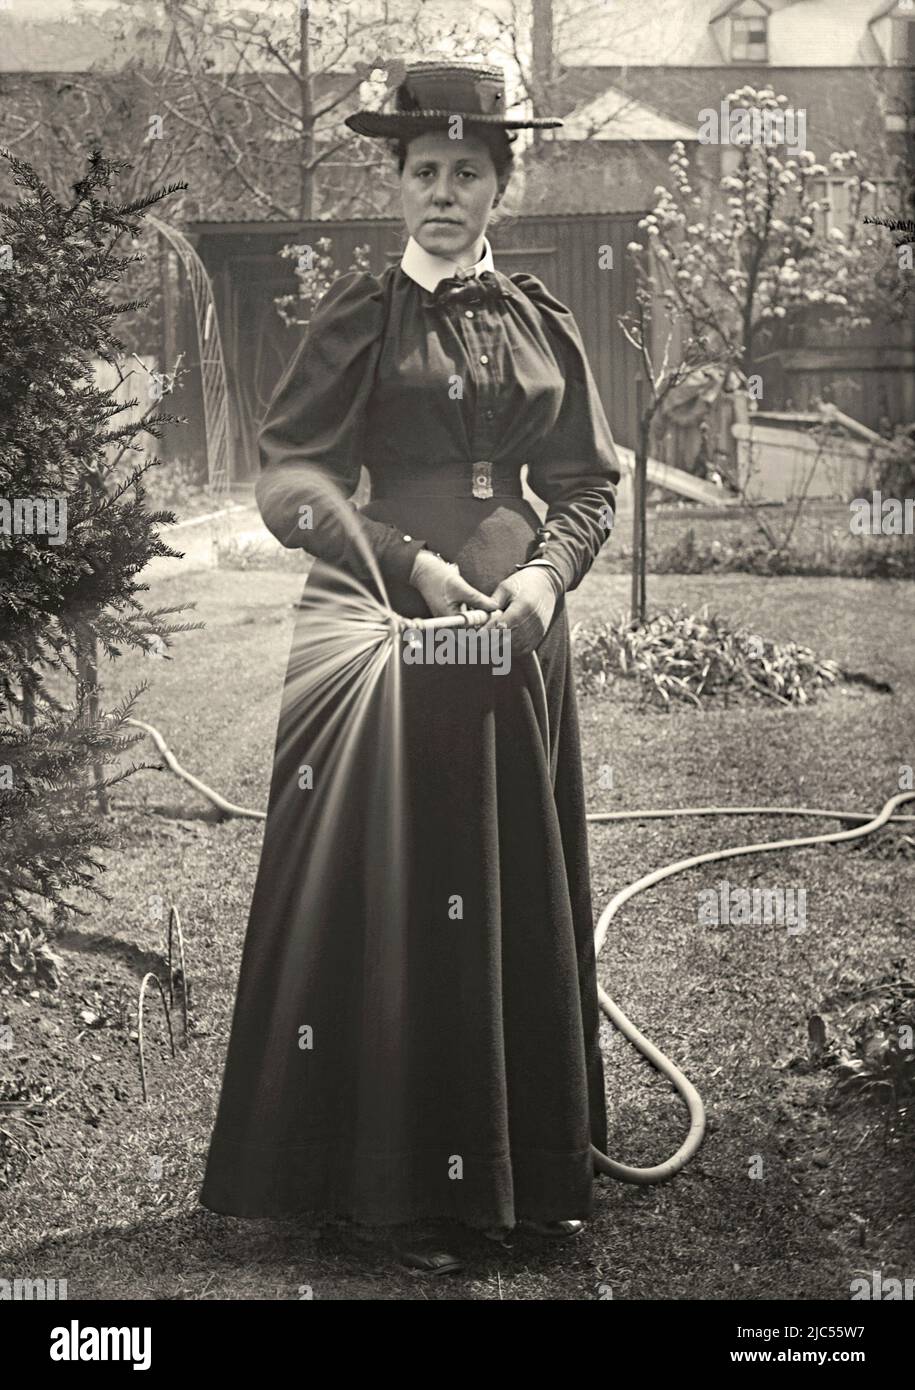 Una mujer usando una manguera para regar su jardín trasero, c. 1900. Ella usa ropa elegante, incluyendo un sombrero y guantes, para la tarea. Esto es de un negativo de vidrio victoriano antiguo – una fotografía vintage de 1800s/1900s. Foto de stock